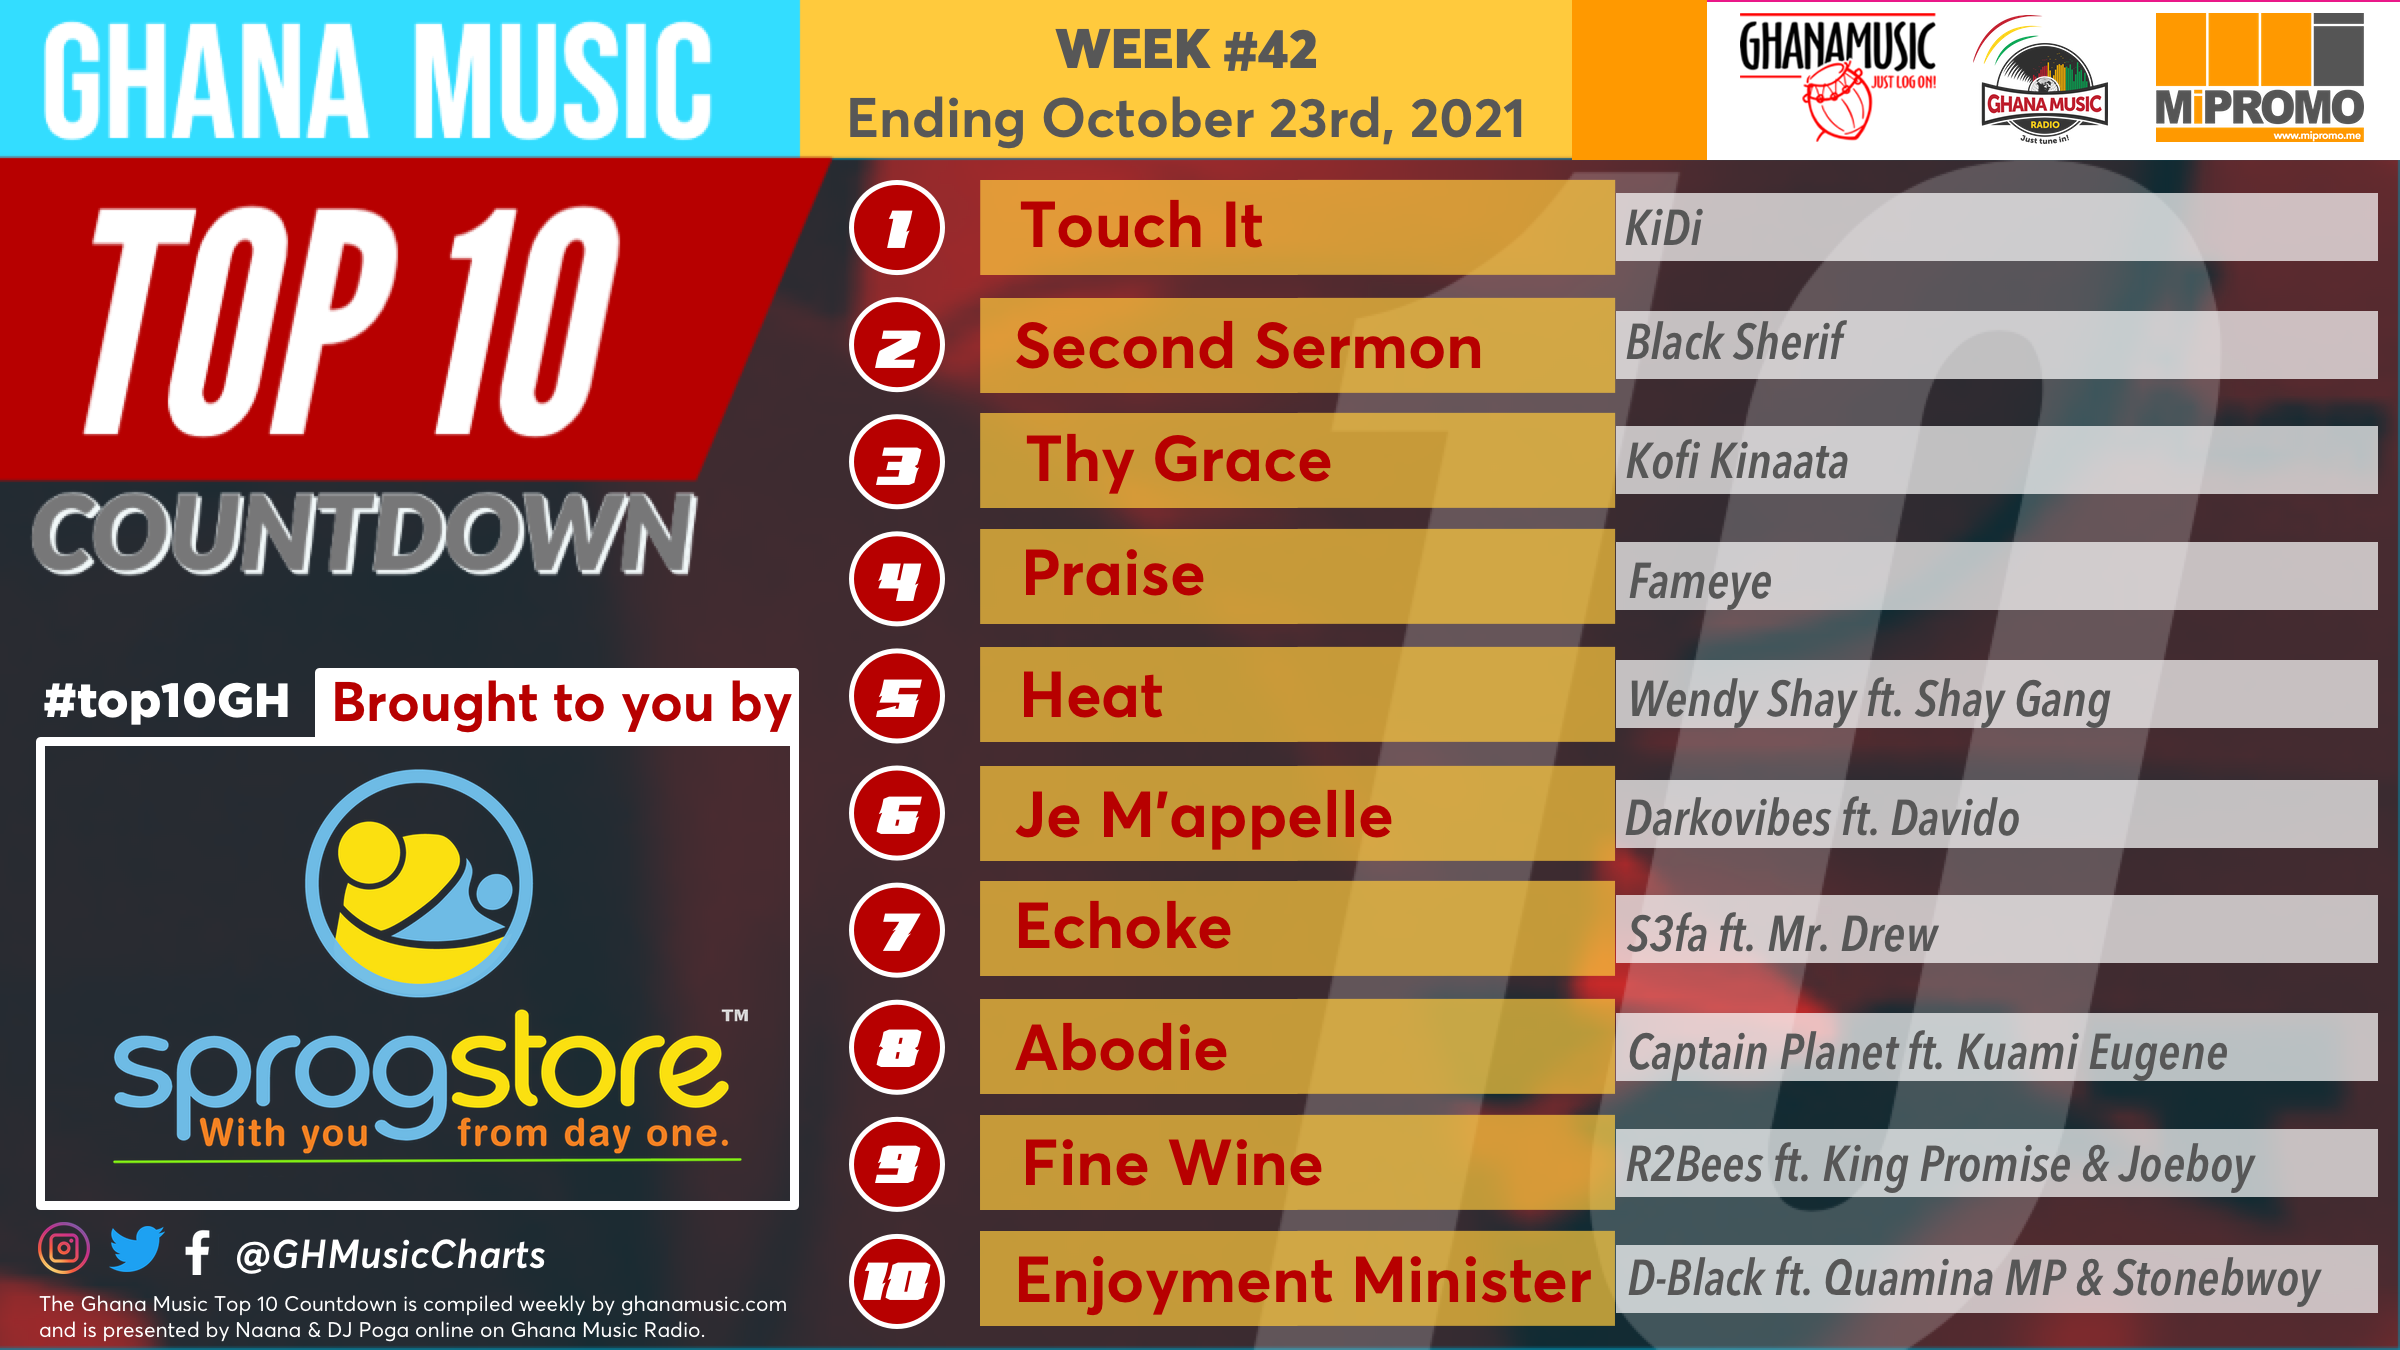 2021 Week 42: Ghana Music Top 10 Countdown